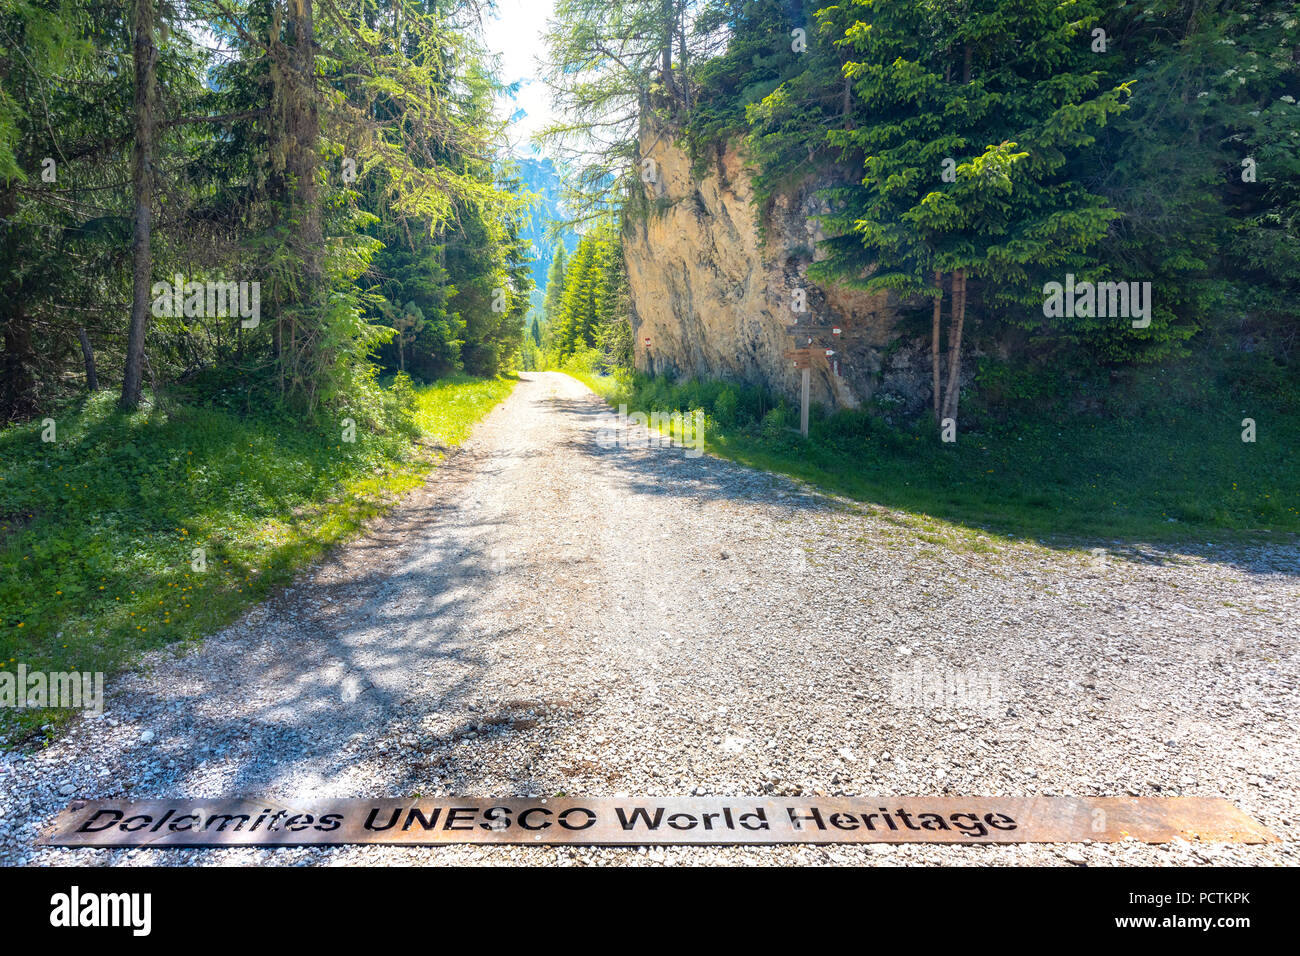 Dolomites UNESCO World Heritage, écrit sur le fer sur l'une des entrées du parc naturel de Puez-Geisler, Dolomites, Bolzano, le Tyrol du Sud, Italie Banque D'Images